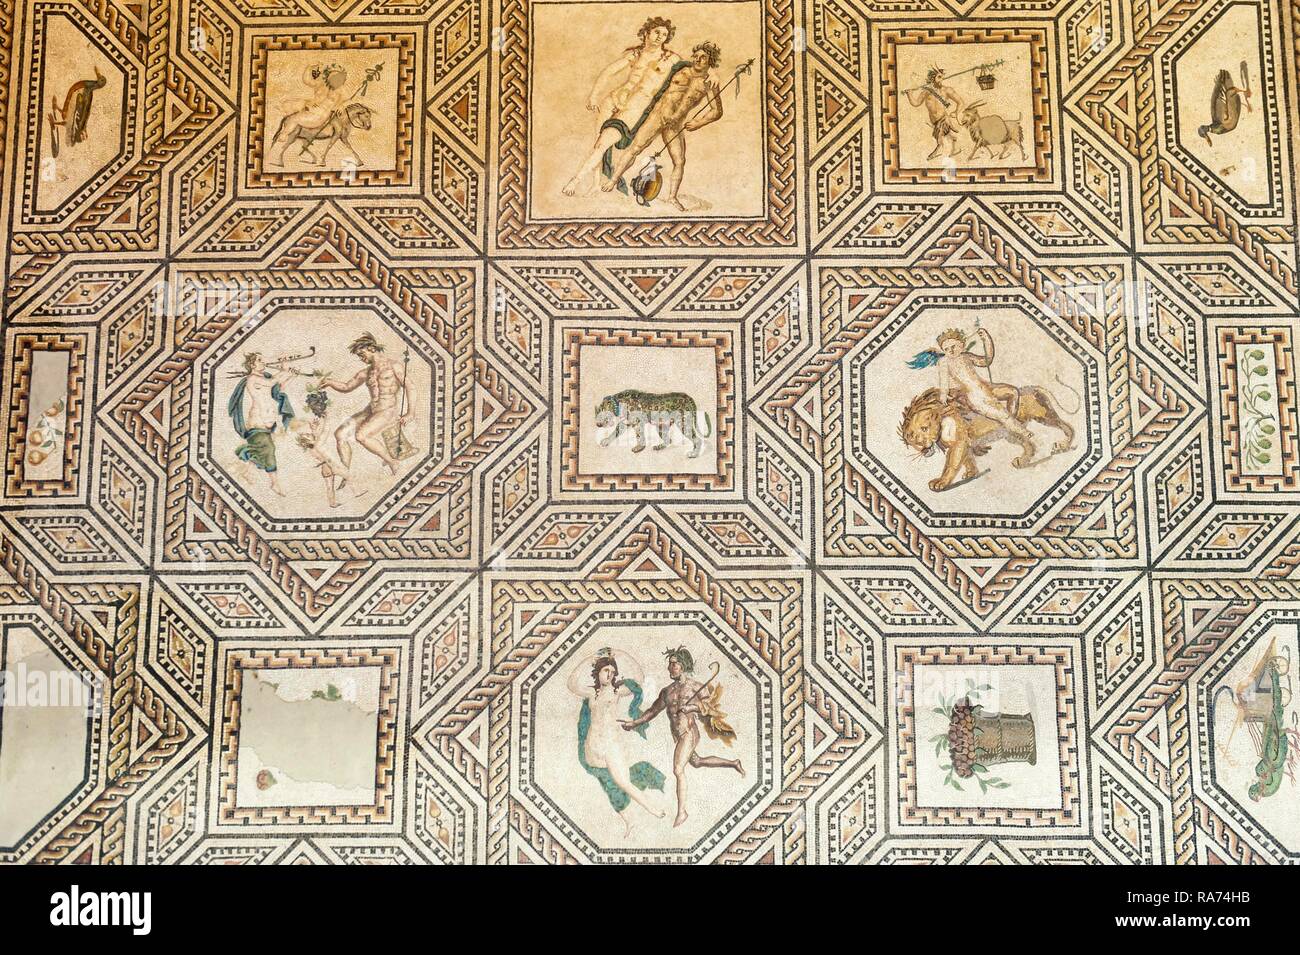 Römisches Fußbodenmosaik, Dionysos Mosaik, Römisch-Germanisches Museum,  Köln, Nordrhein-Westfalen, Deutschland Stockfotografie - Alamy